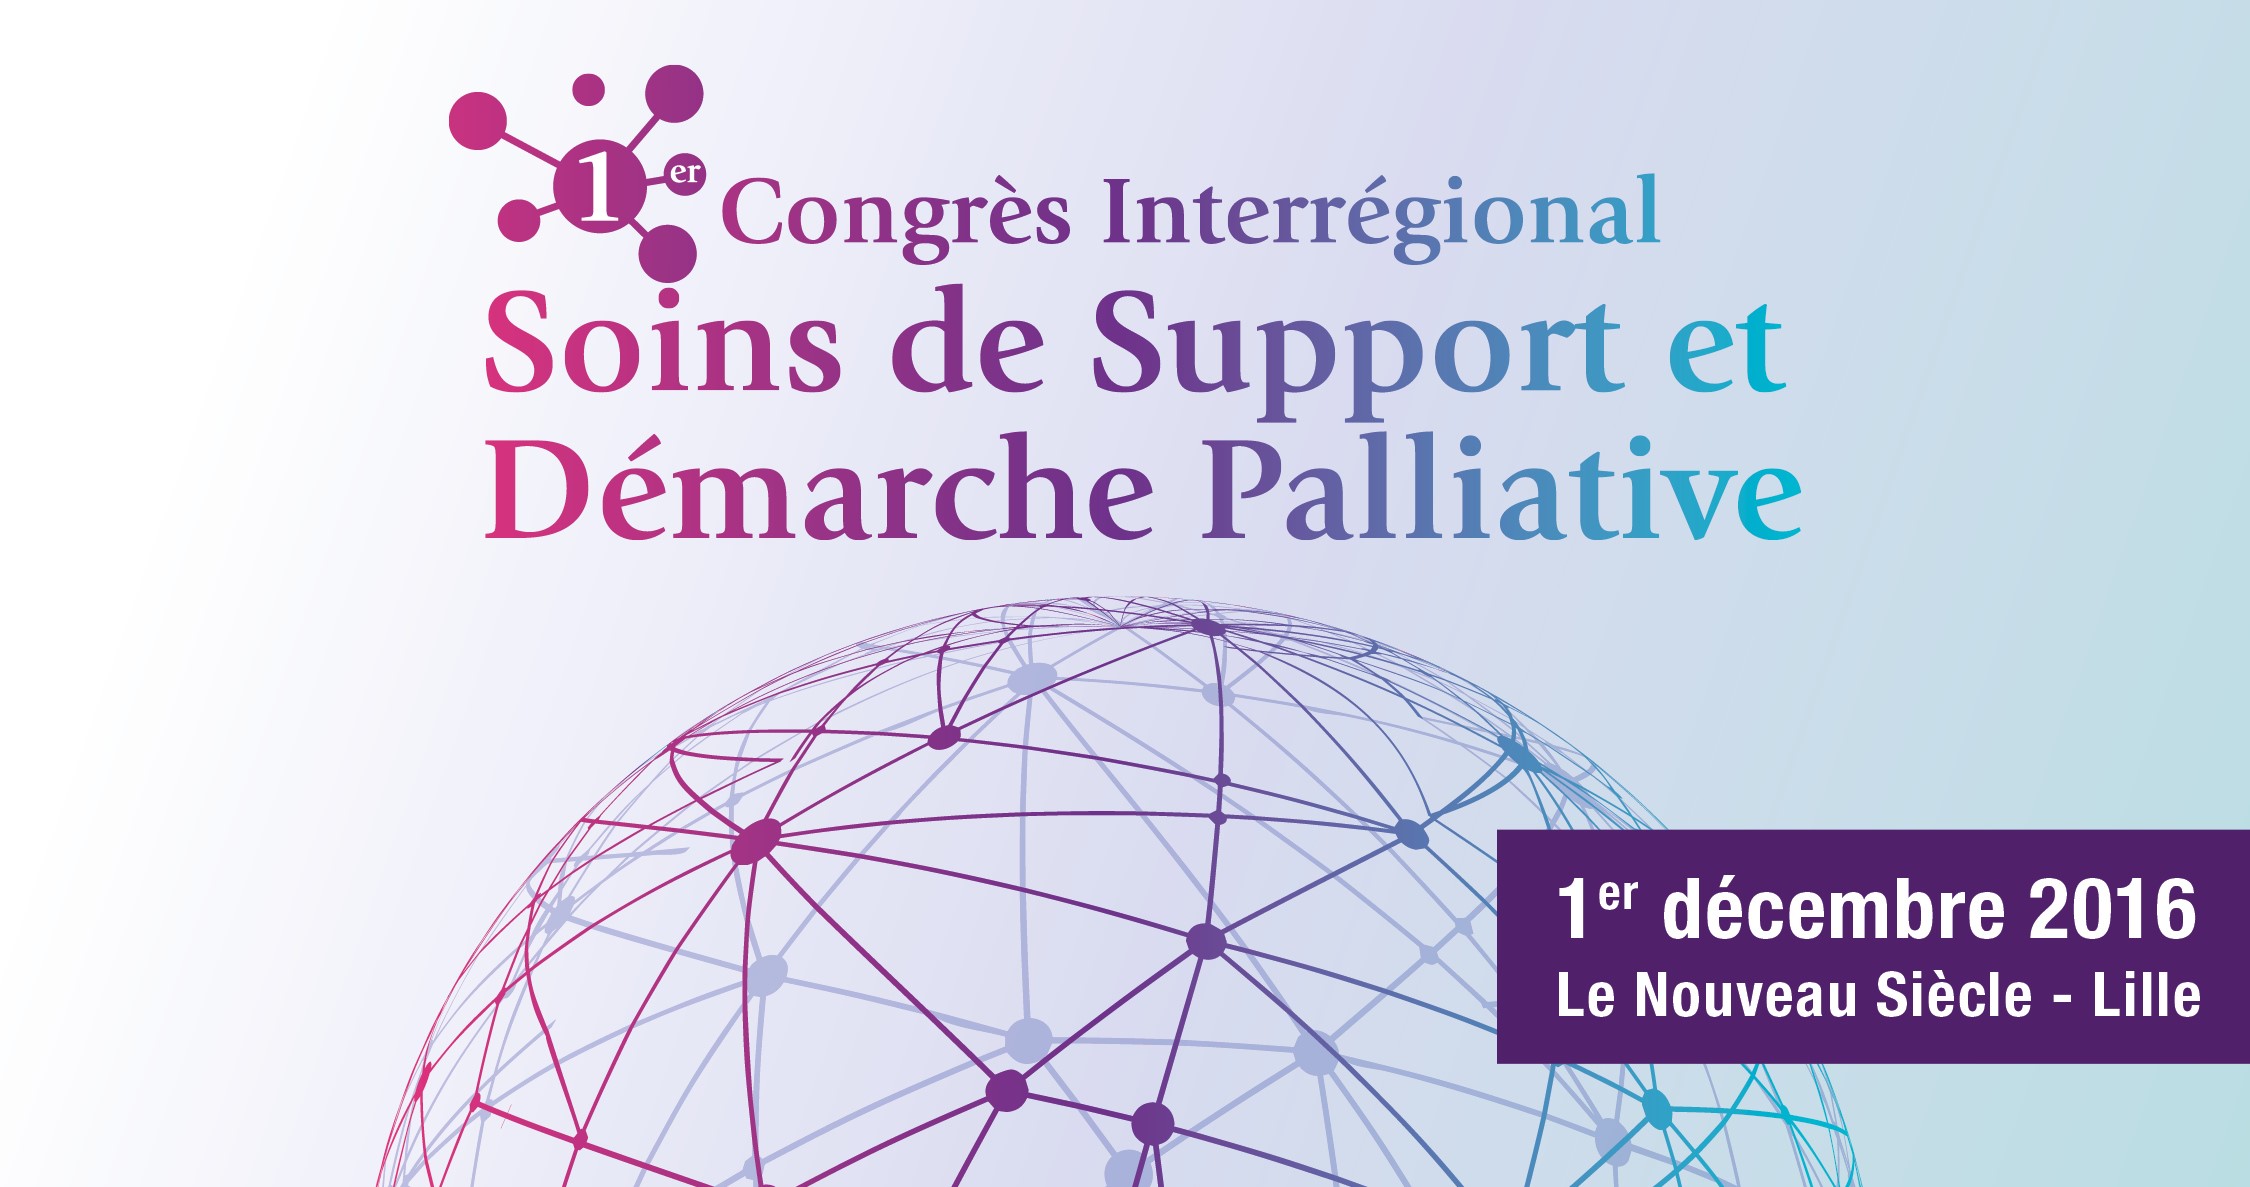 1er congrès interrégional des soins de support et démarche palliative